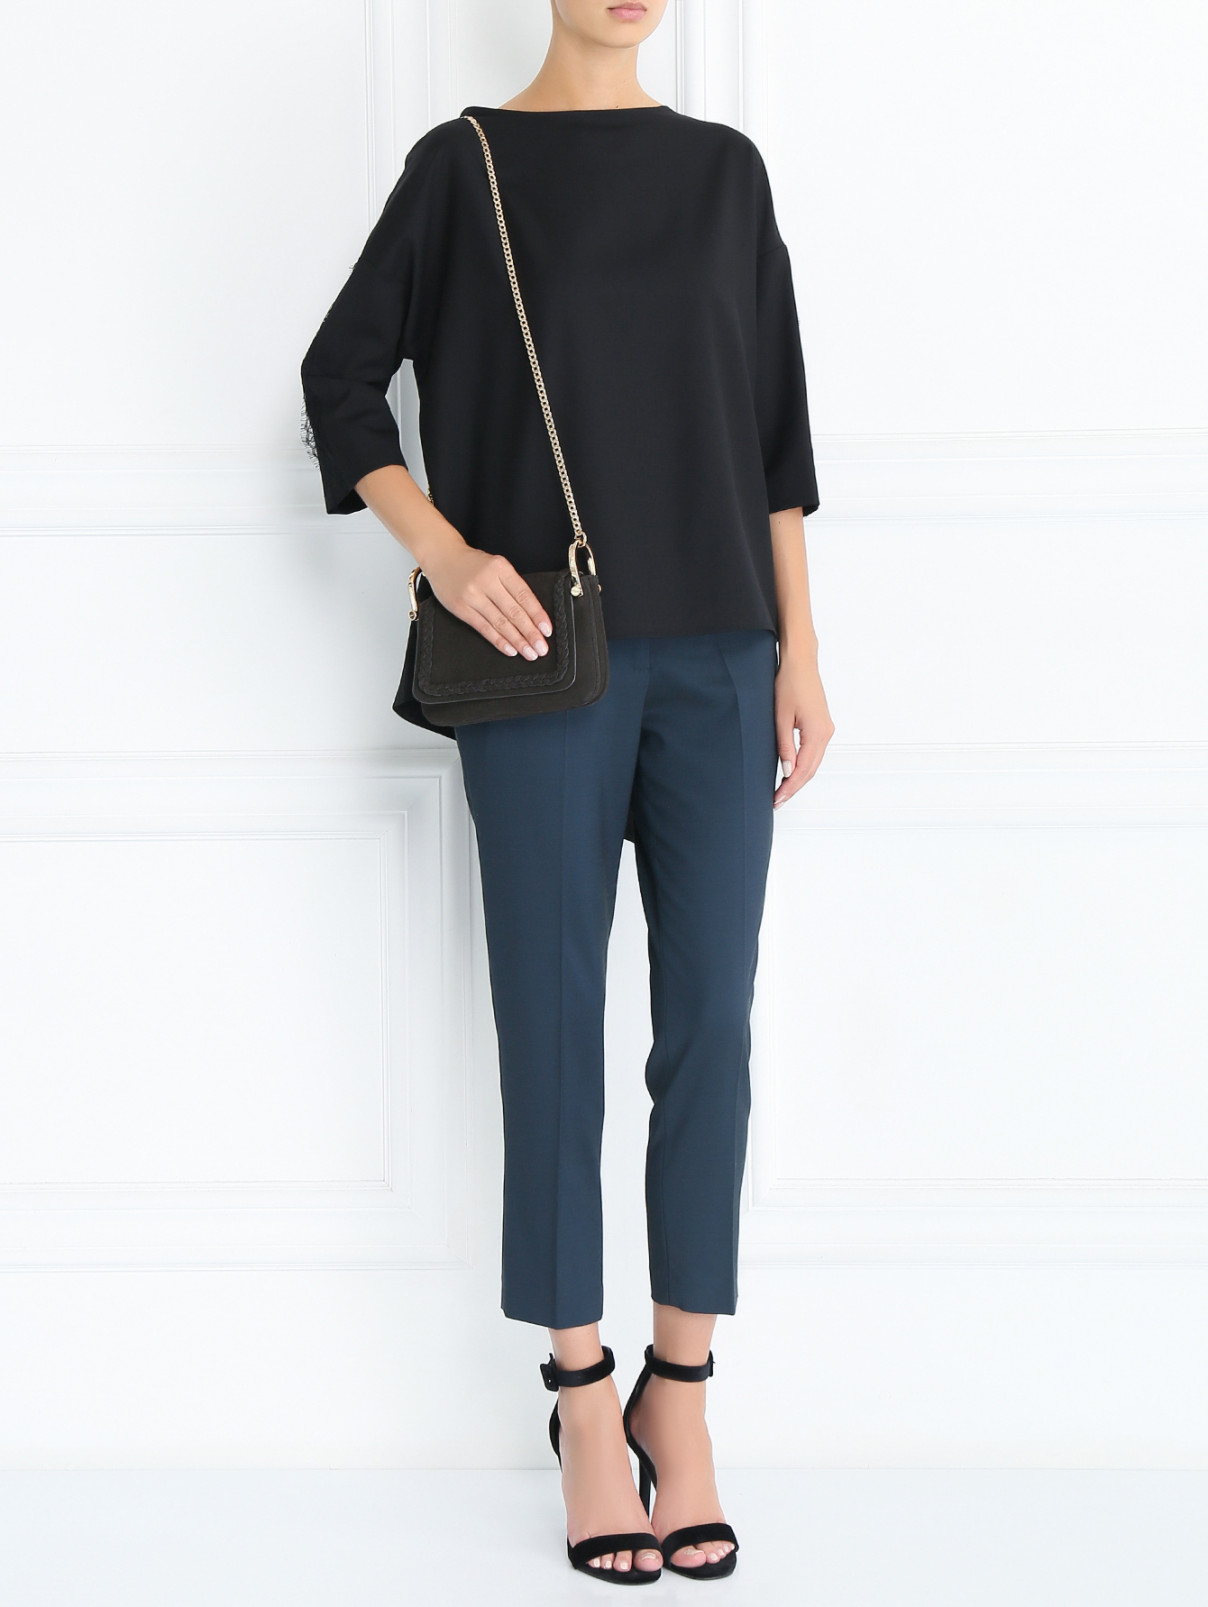 Блуза из шерсти свободного кроя с кружевной отделкой Tara Jarmon  –  Модель Общий вид  – Цвет:  Черный